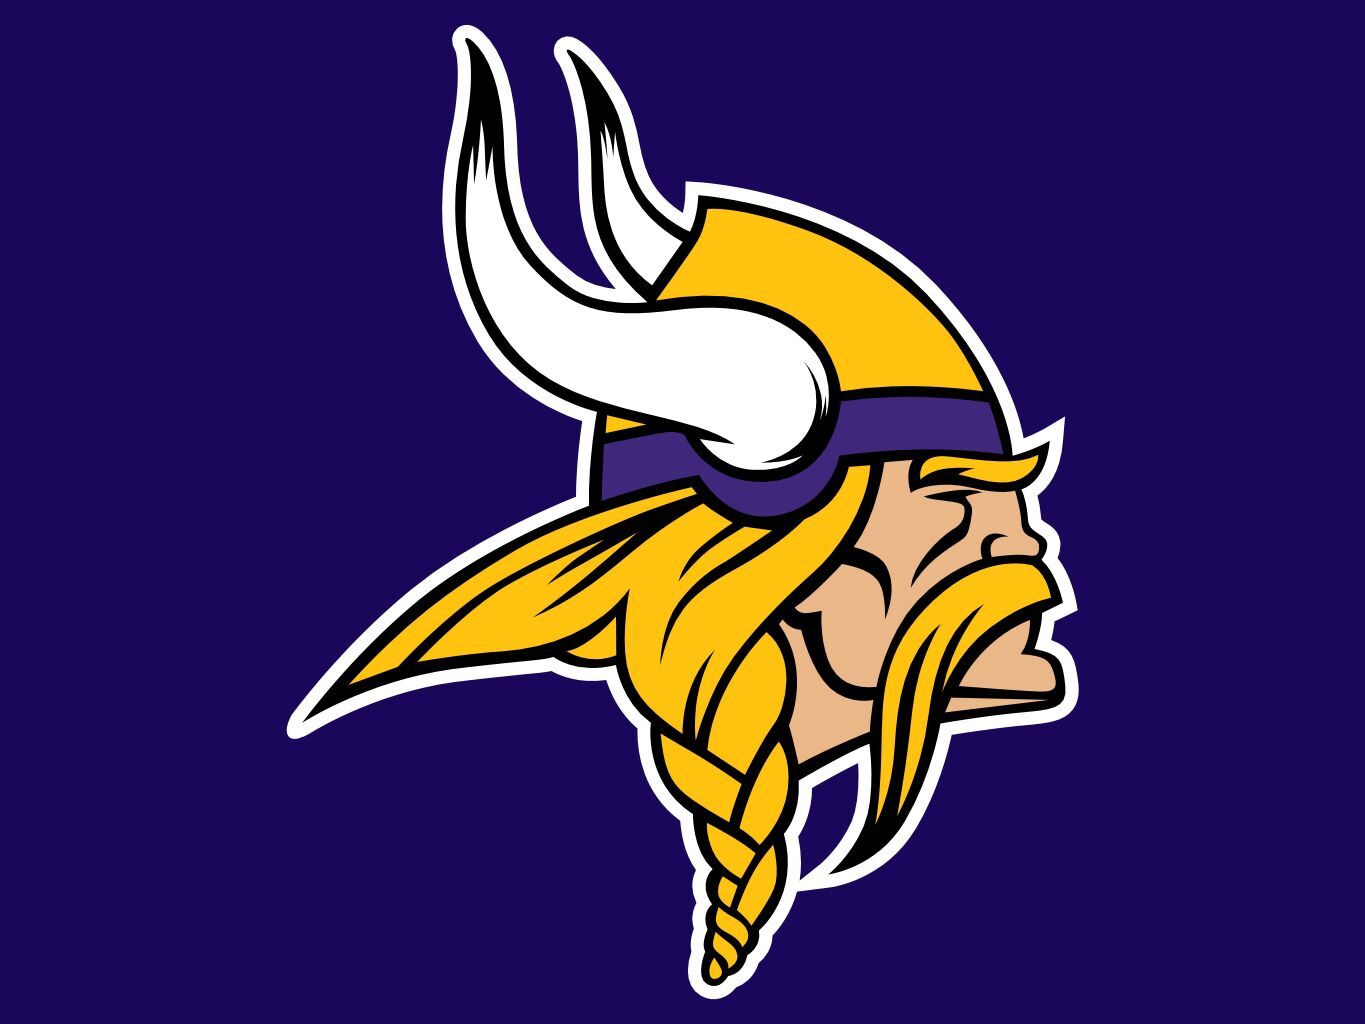 Minnesota Vikings - Wikipedia